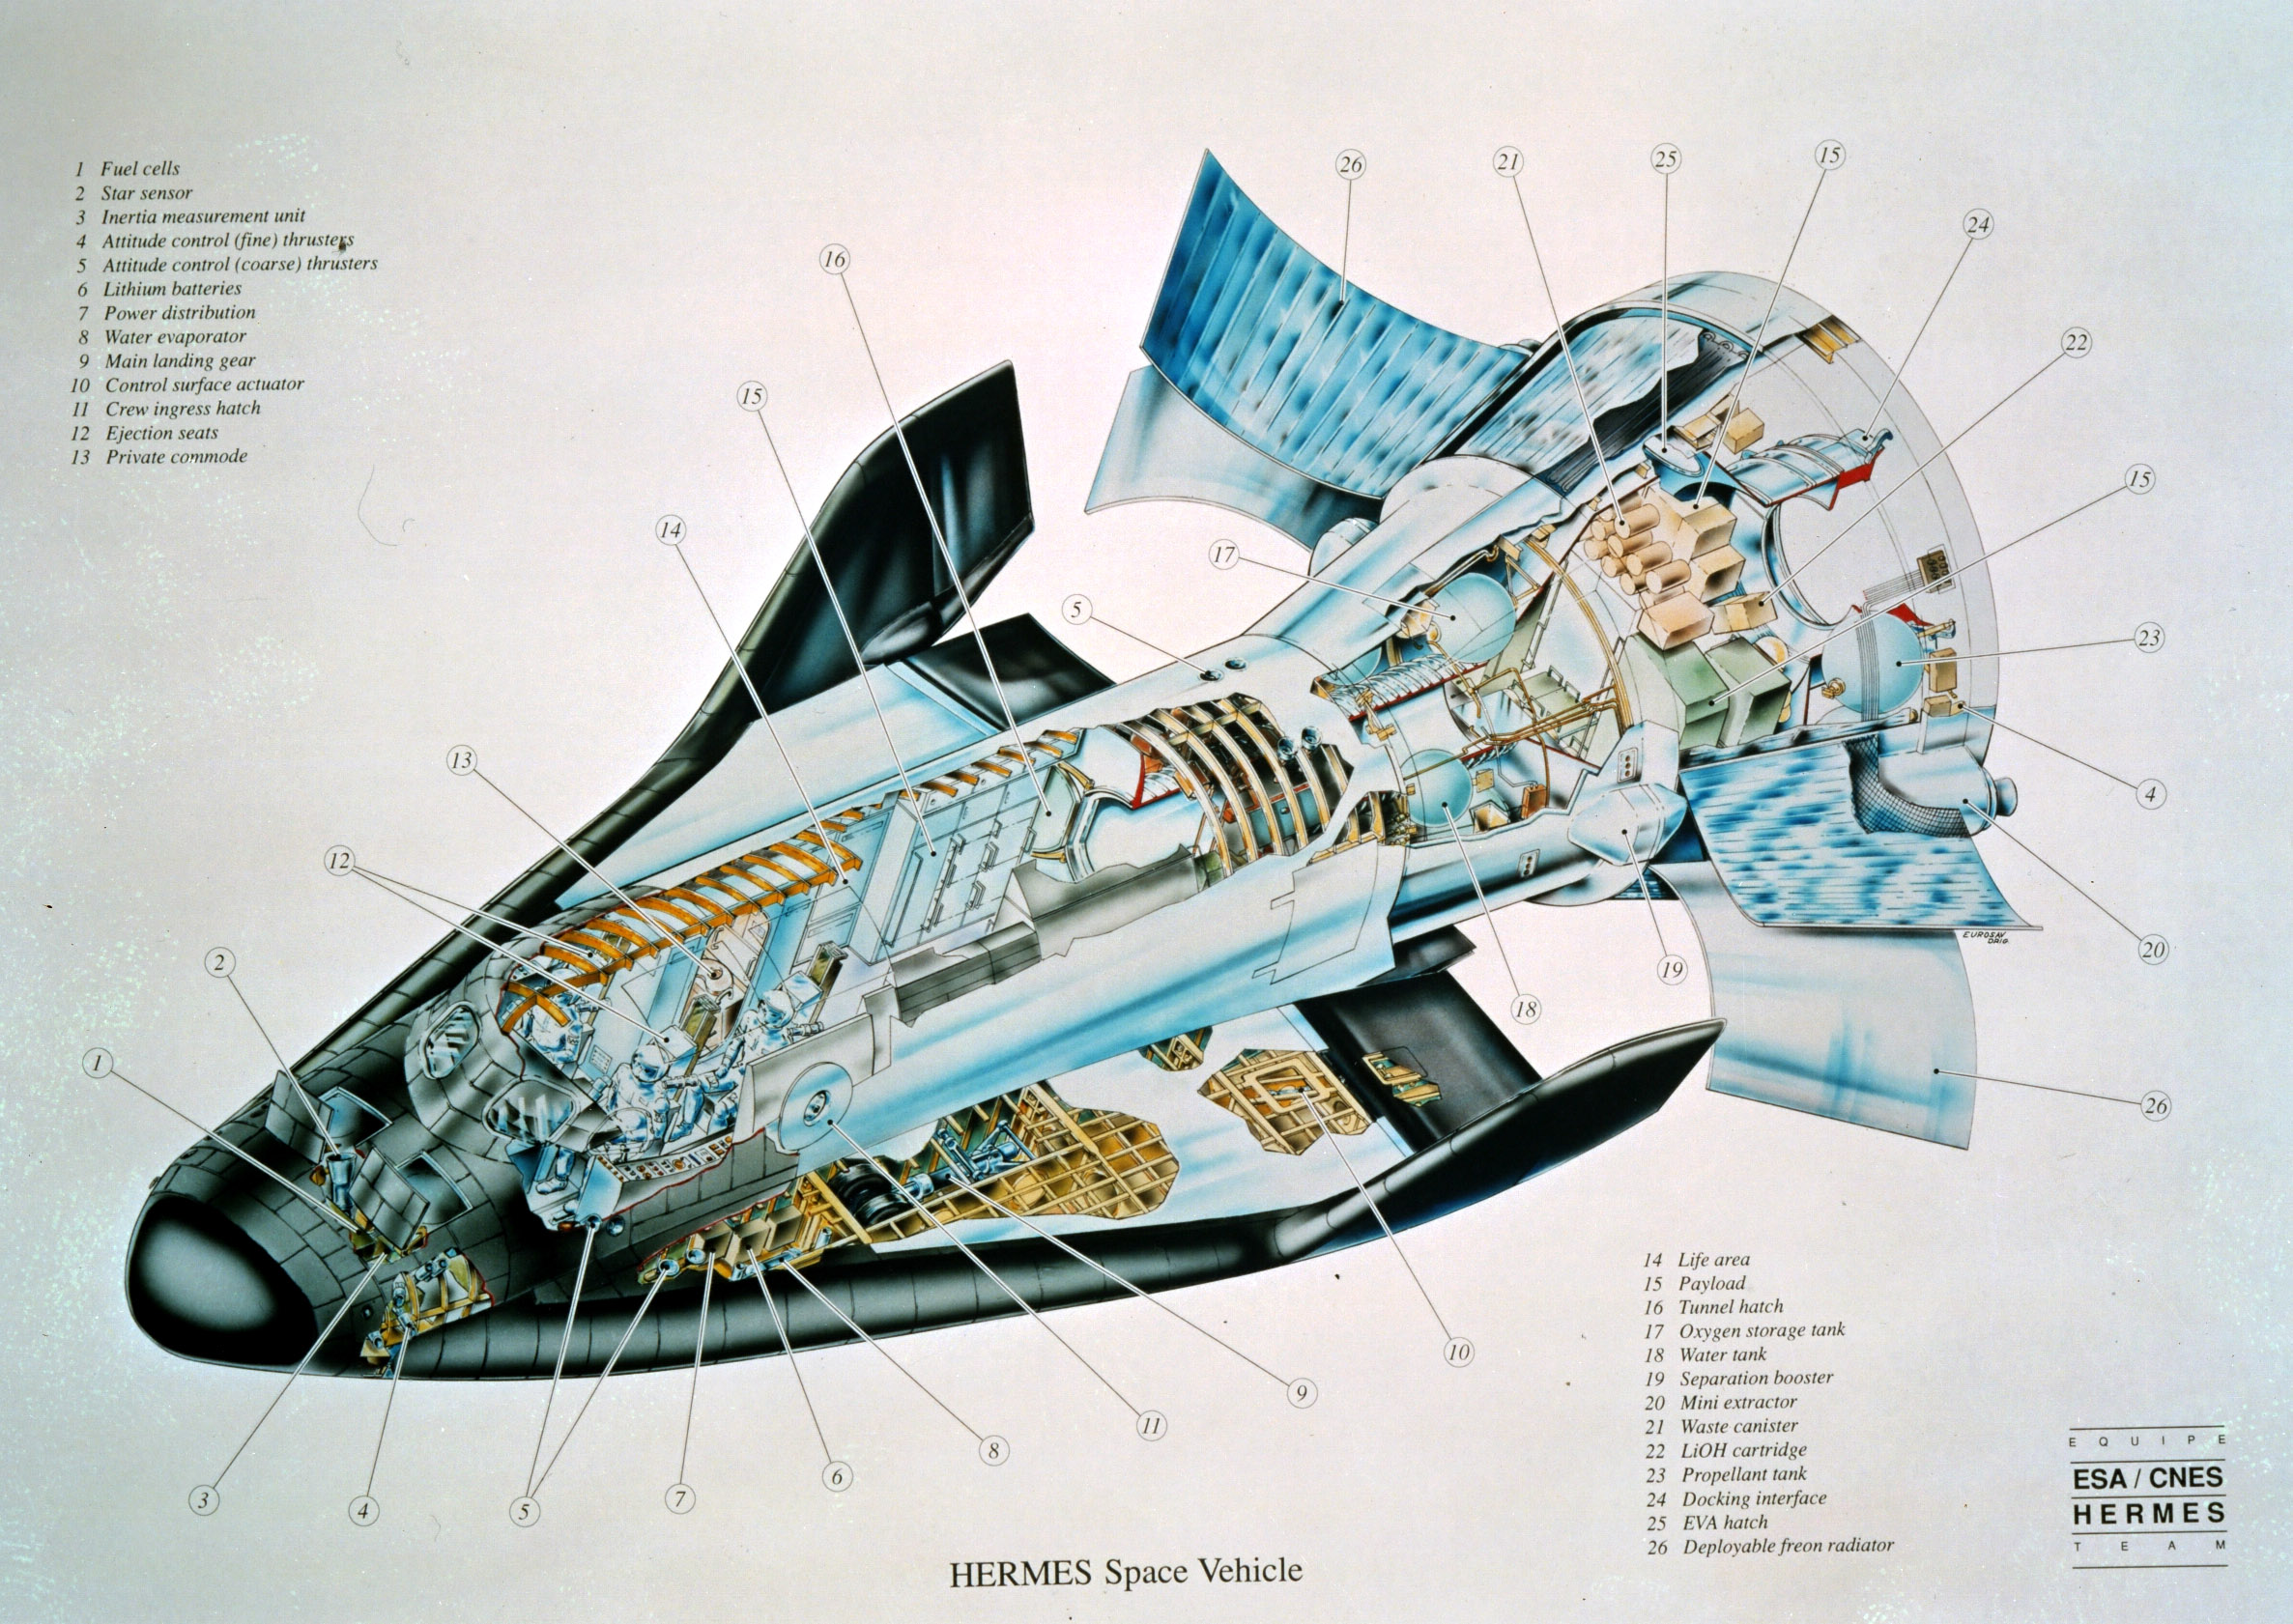 Space in Images - 2003 - 07 - Hermes cutaway